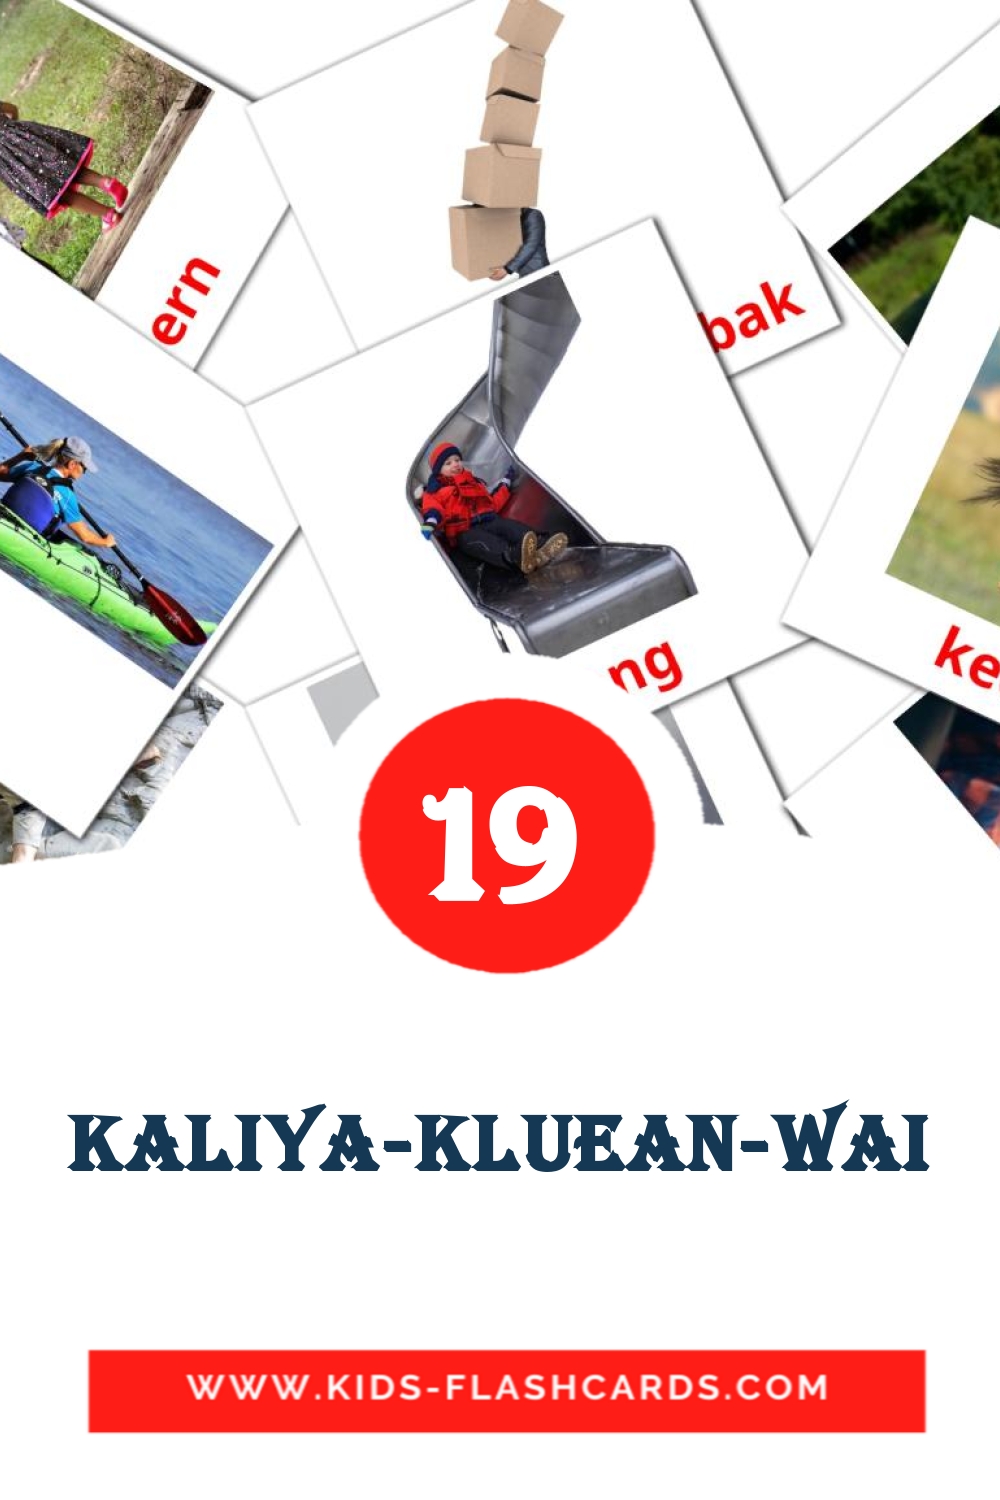 19 tarjetas didacticas de Kaliya-kluean-wai para el jardín de infancia en amhárico